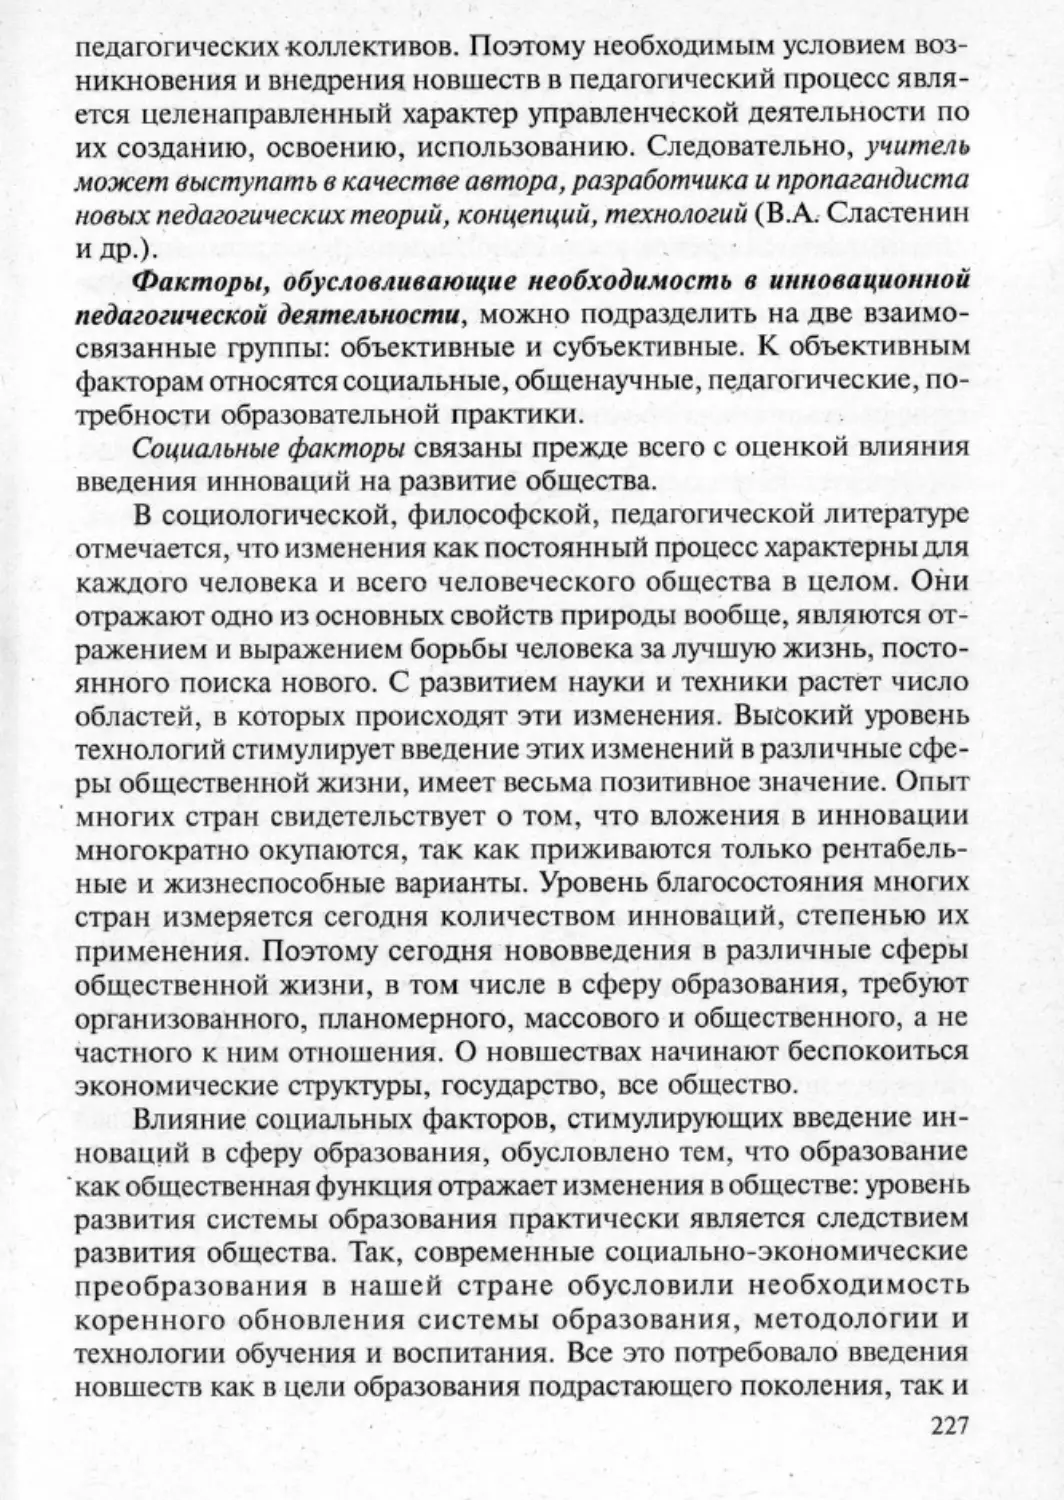 Загрекова Л.В., Николаева В.В - 0228